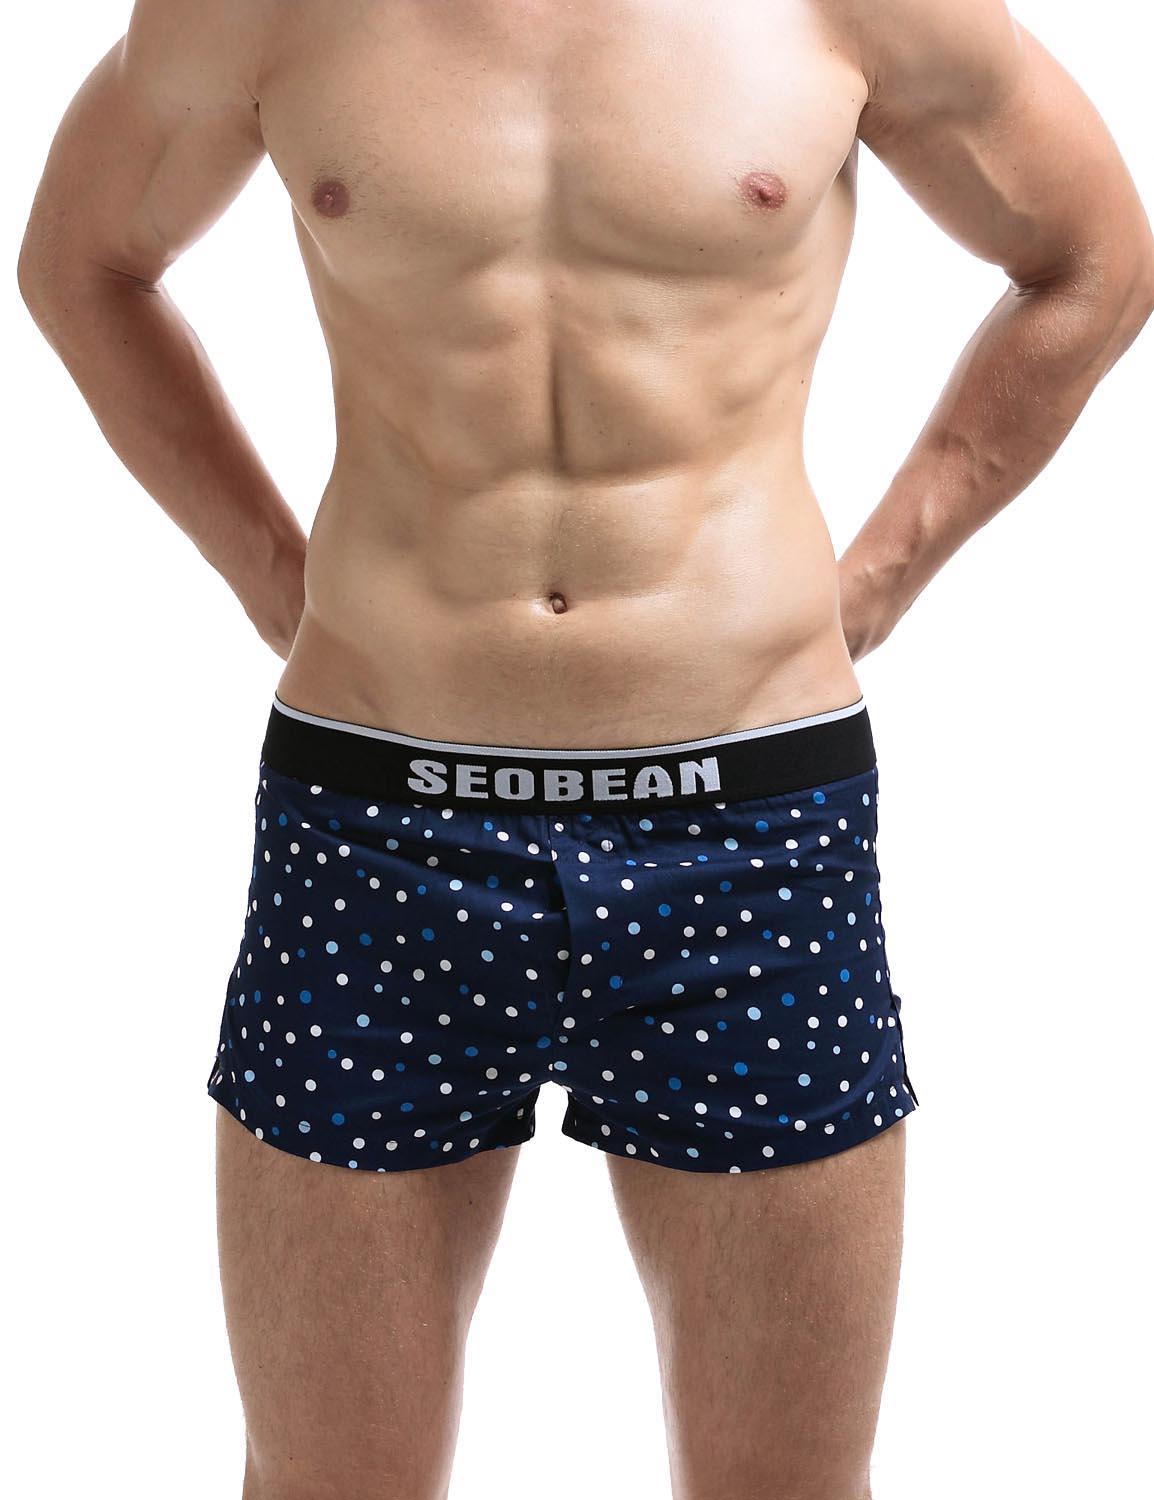 SEOBEAN Mens Sexy Plaid Low Rise Trunks Boxer Underwear 70505 – SEOBEAN®